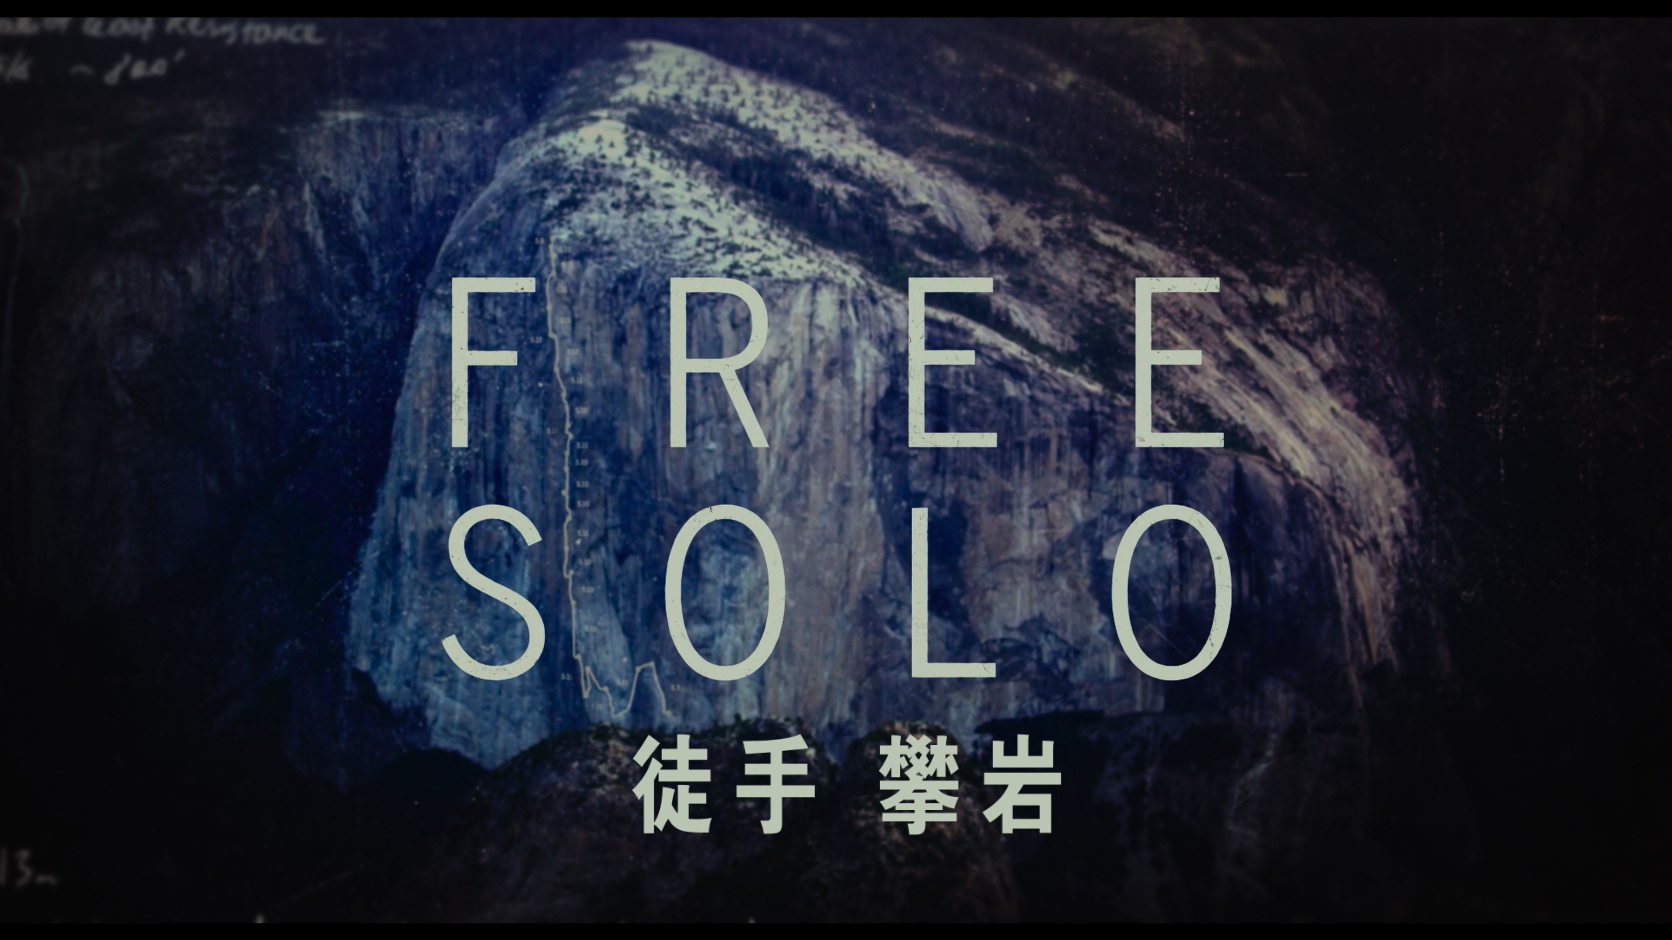 徒手攀岩/赤手登峰(港,台) [DIY简繁英特效字幕] Free Solo 2018 2160p UHD Blu-ray HEVC DTS-HD MA 5.1-A236P5@OurBits    [49.36 GB]-3.jpg